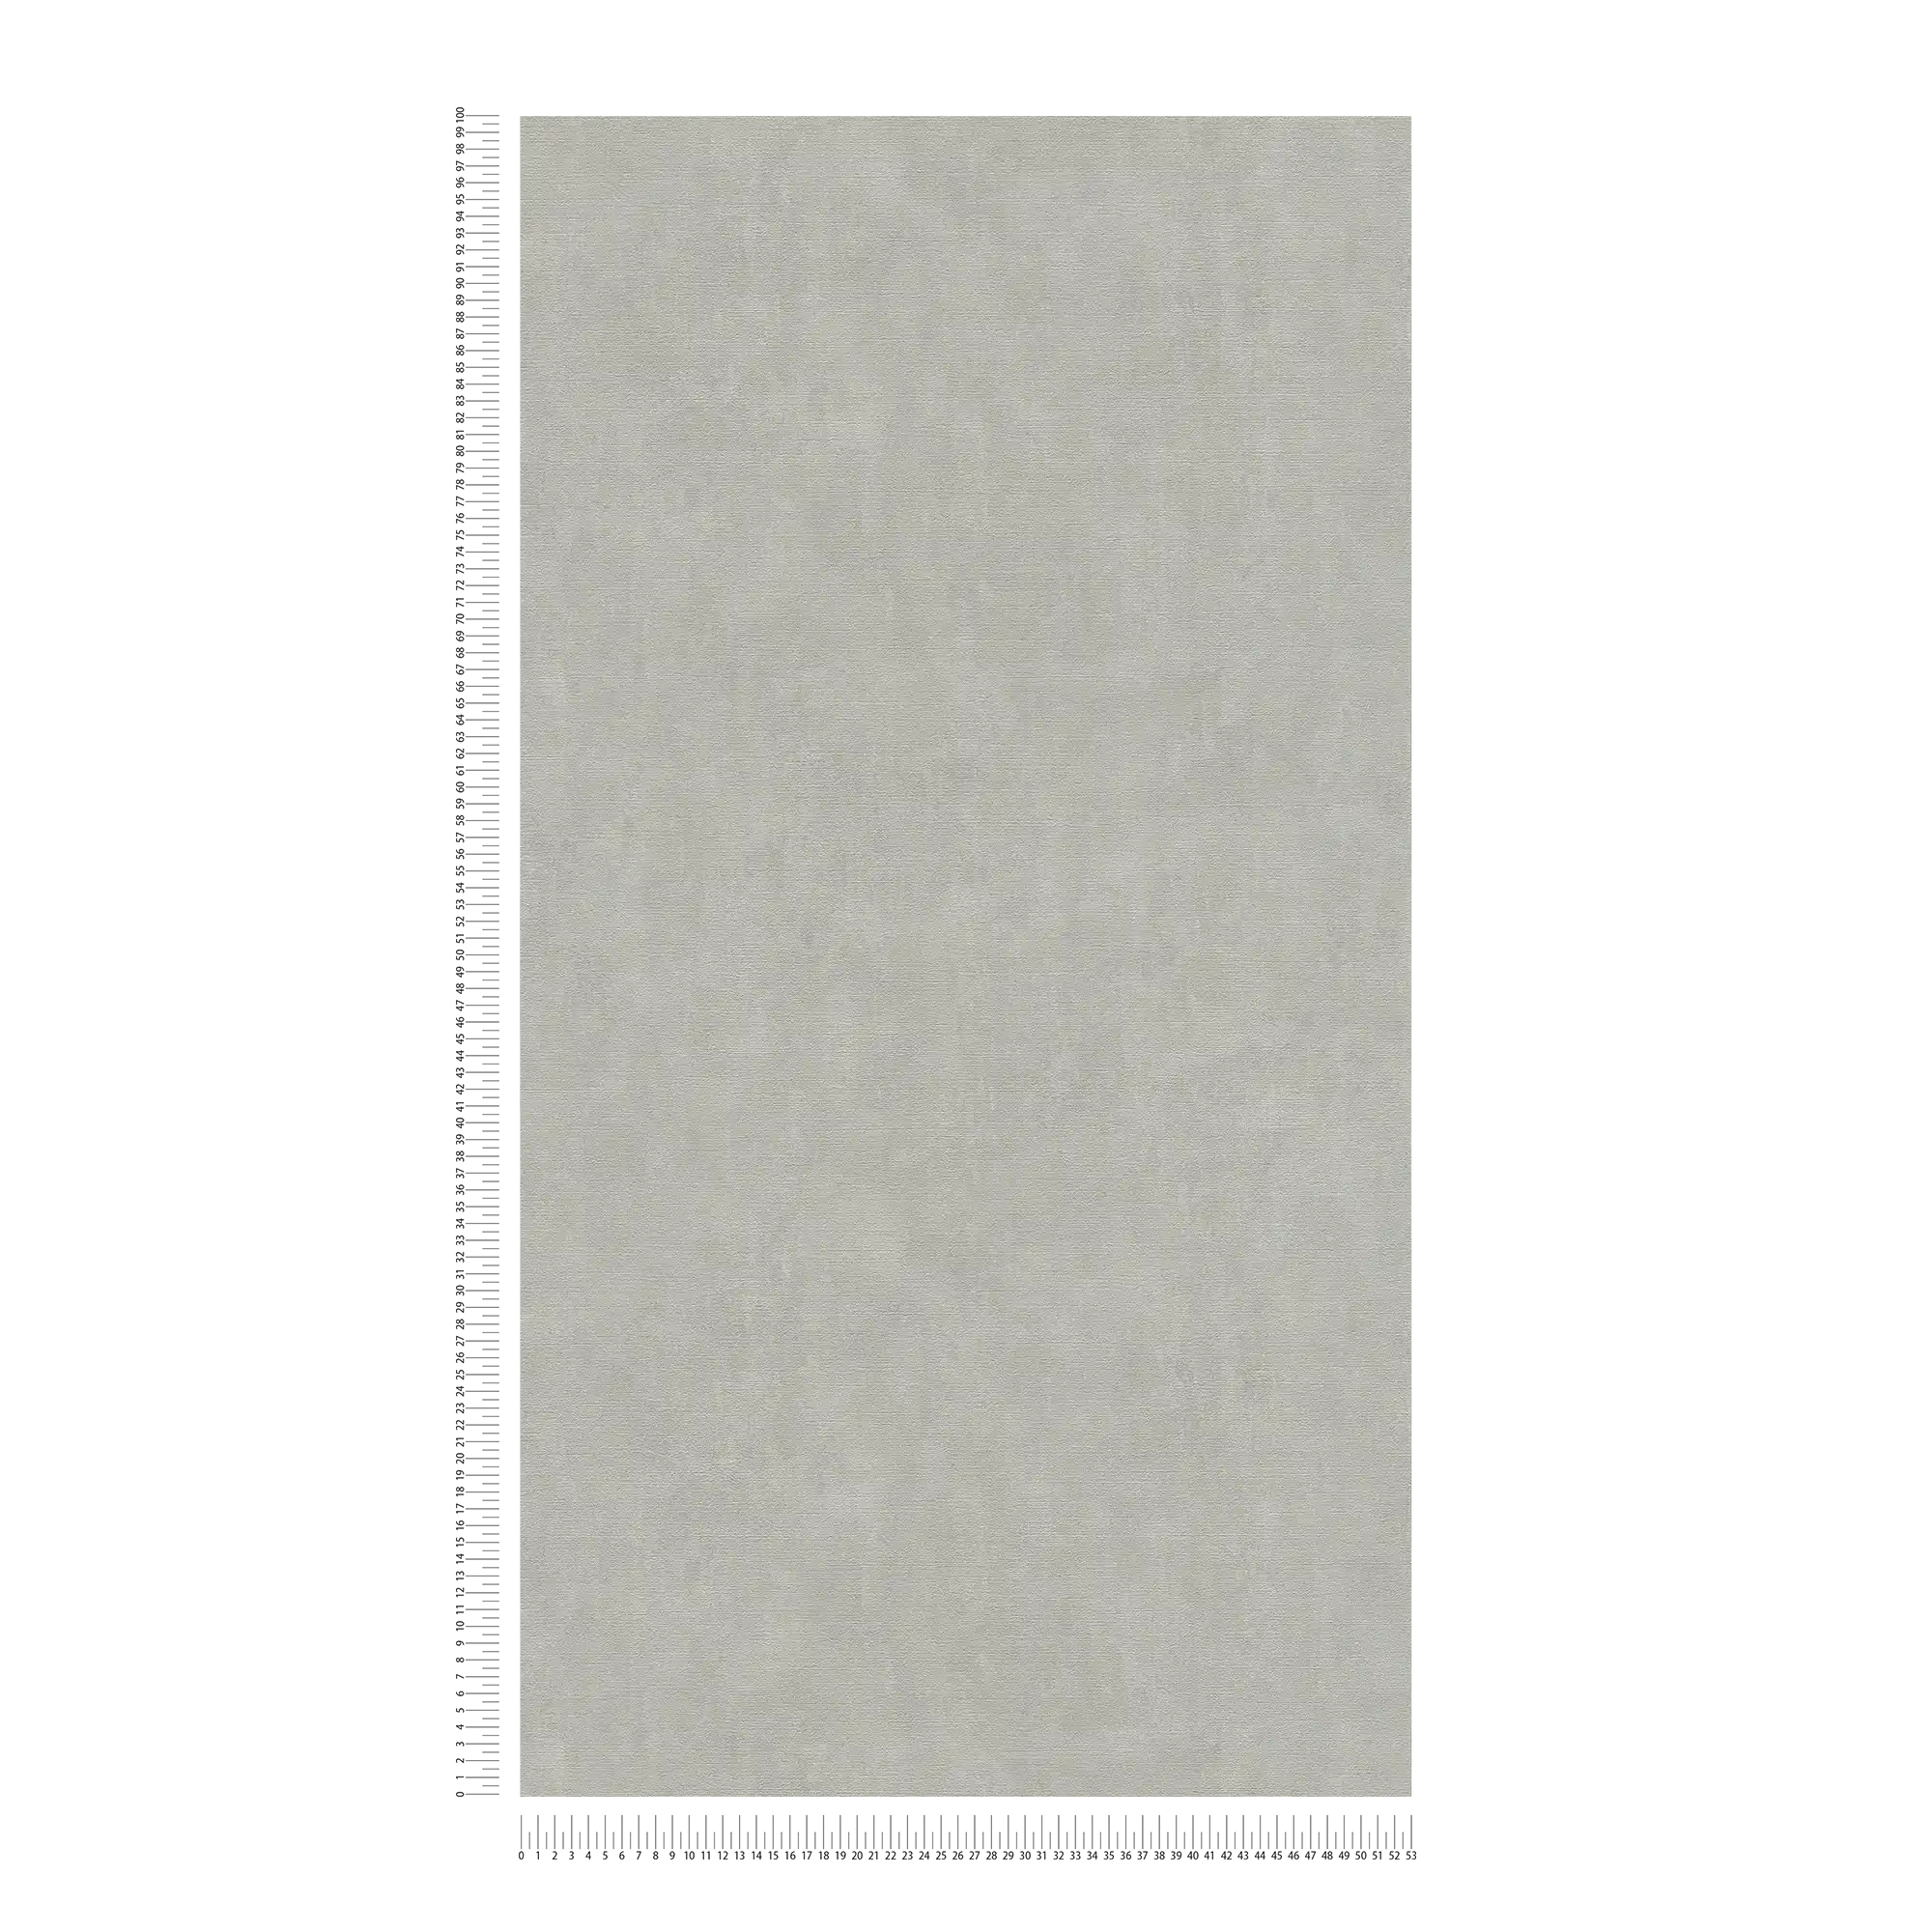             Carta da parati grigio-beige con effetto intonaco in stile vintage
        